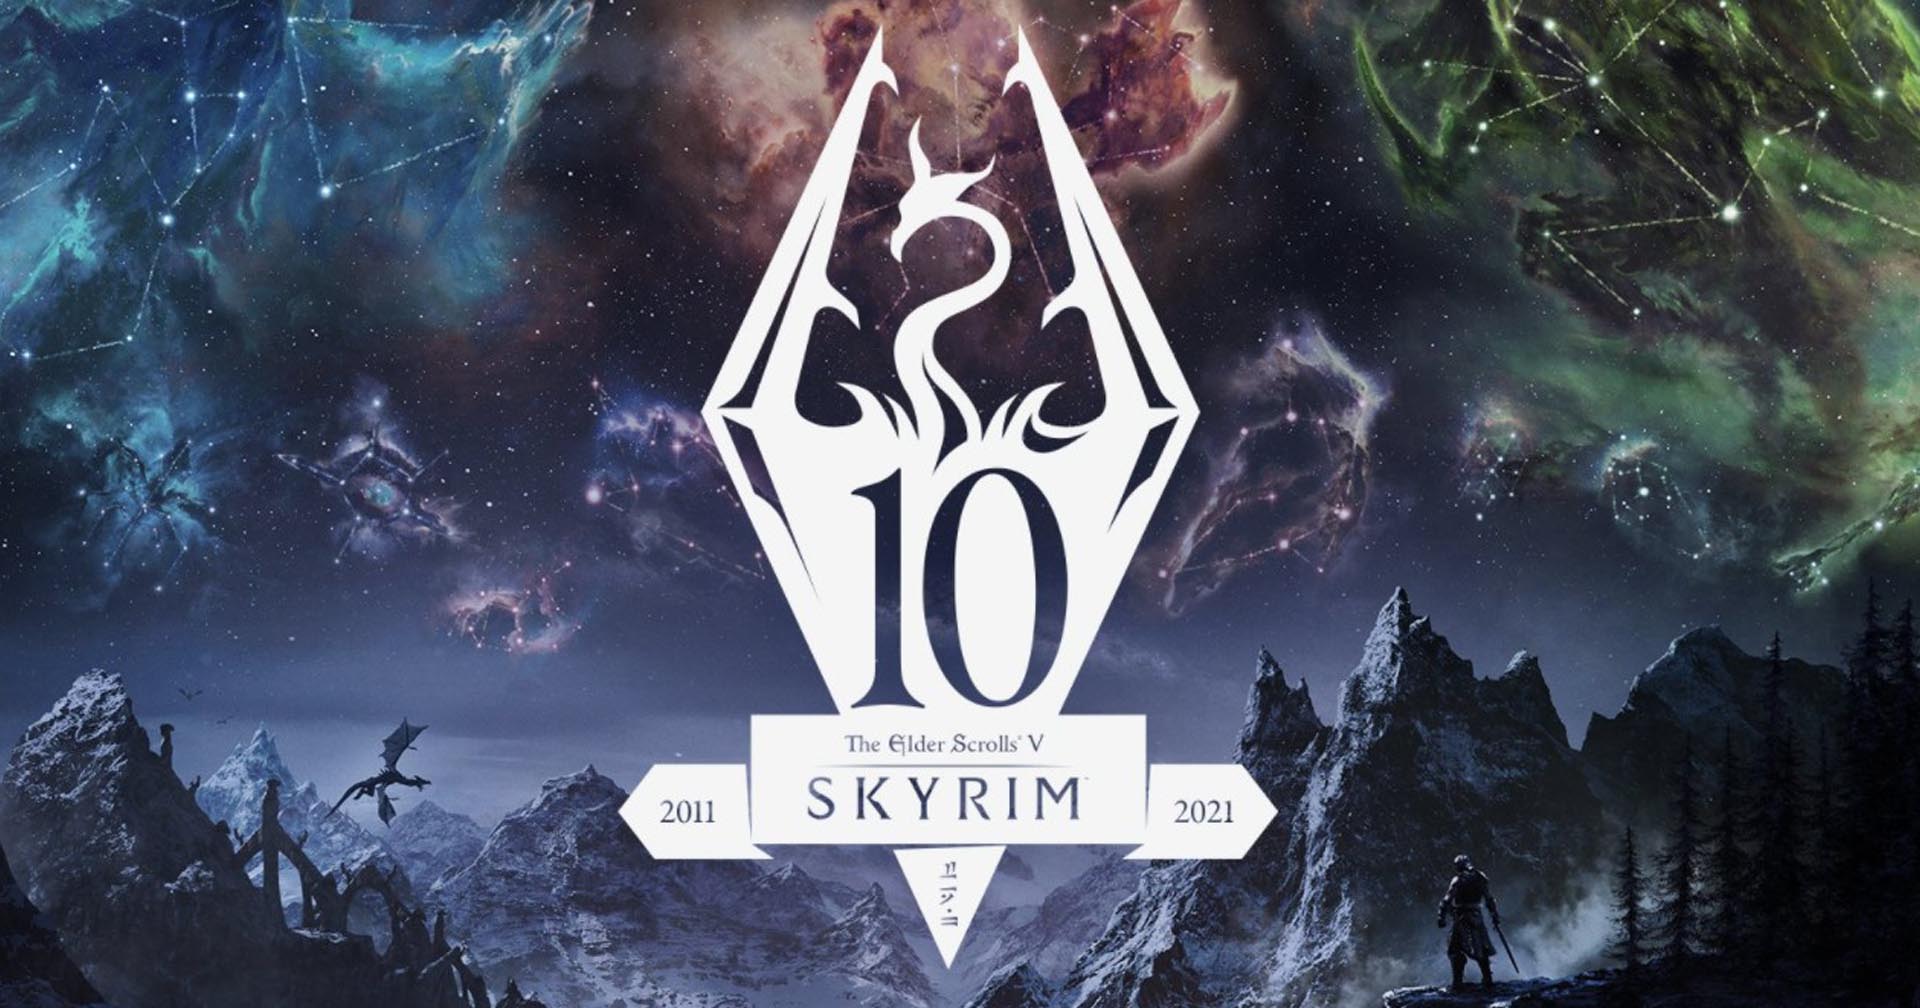 [รีวิวเกม] The Elder Scroll V: Skyrim Anniversary Edition ฉลองครบรอบ 10 ปีด้วยการอัปเกรดครั้งใหญ่…ที่อาจไม่เหมาะกับทุกคน